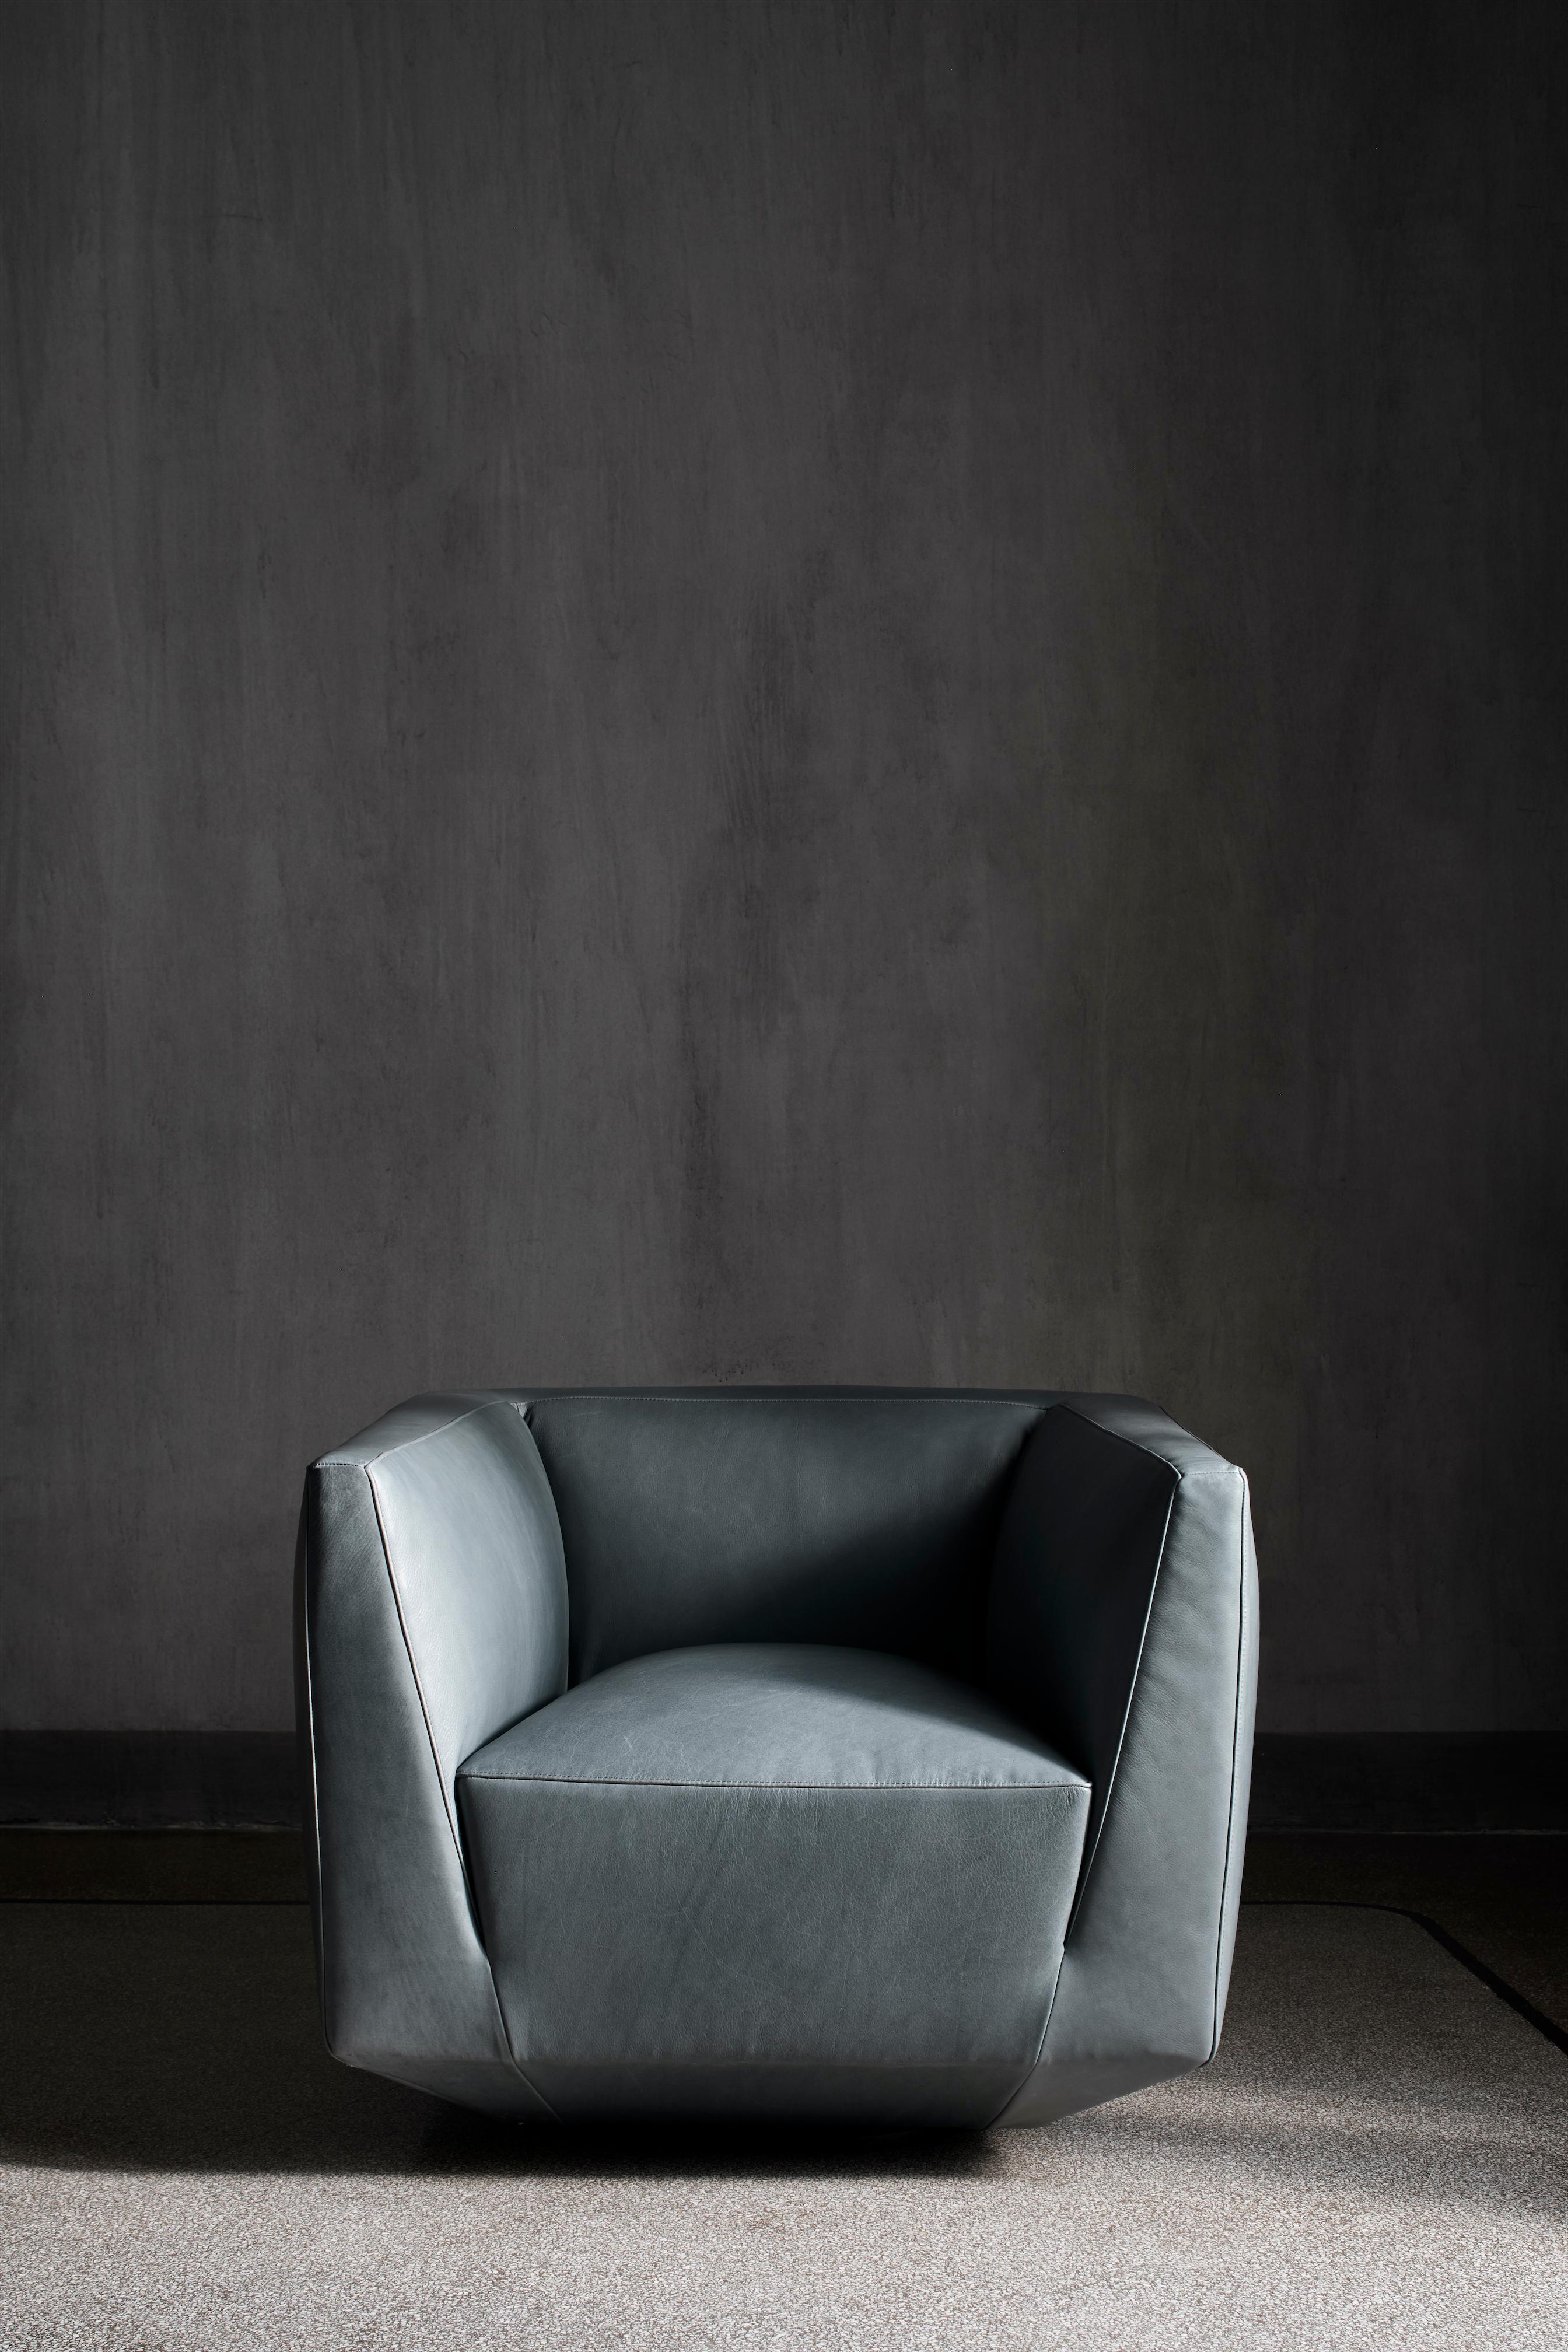 Textile Contemporary Sofa 'Panis' by Amura Lab, Setup 021l + 143l + 018, Nobilis 37 For Sale